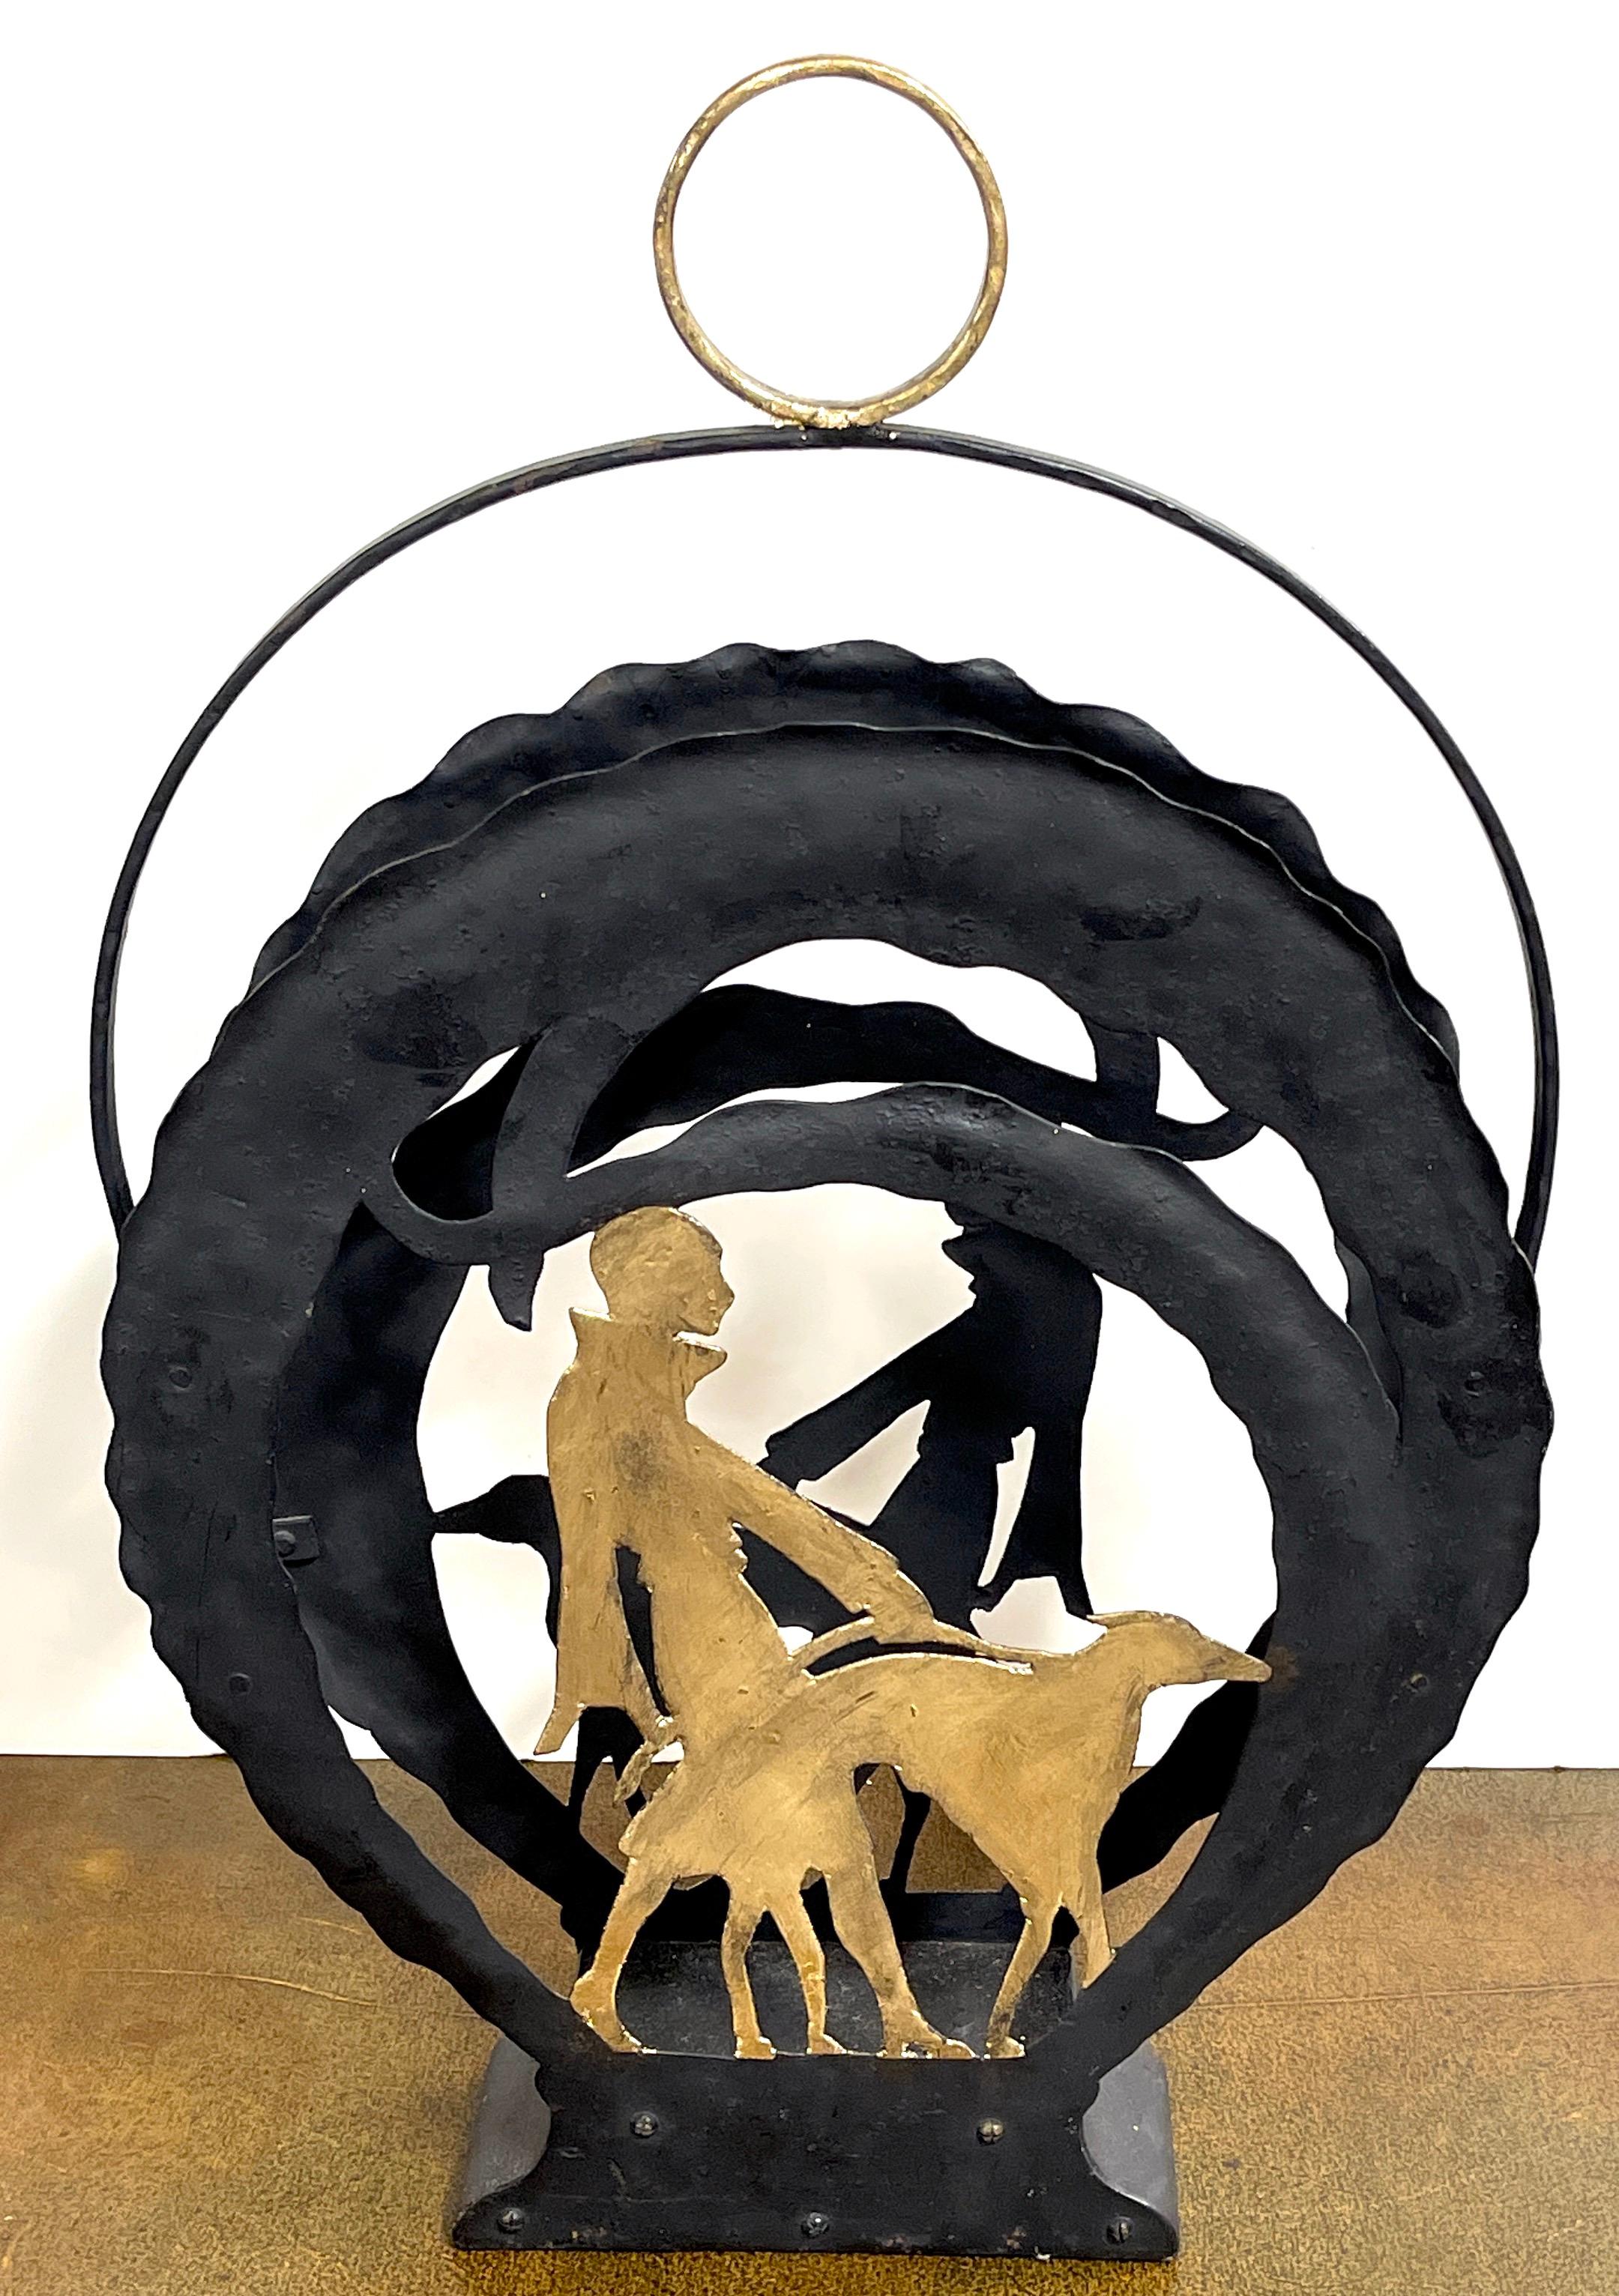 Porte-revues Art Déco américain en fer doré, avec un chien qui marche 
USA, Circa 1930s

Une magnifique vignette en fer forgé percé avec poignée circulaire dorée à double face représentant la silhouette dorée d'une élégante flapper promenant un